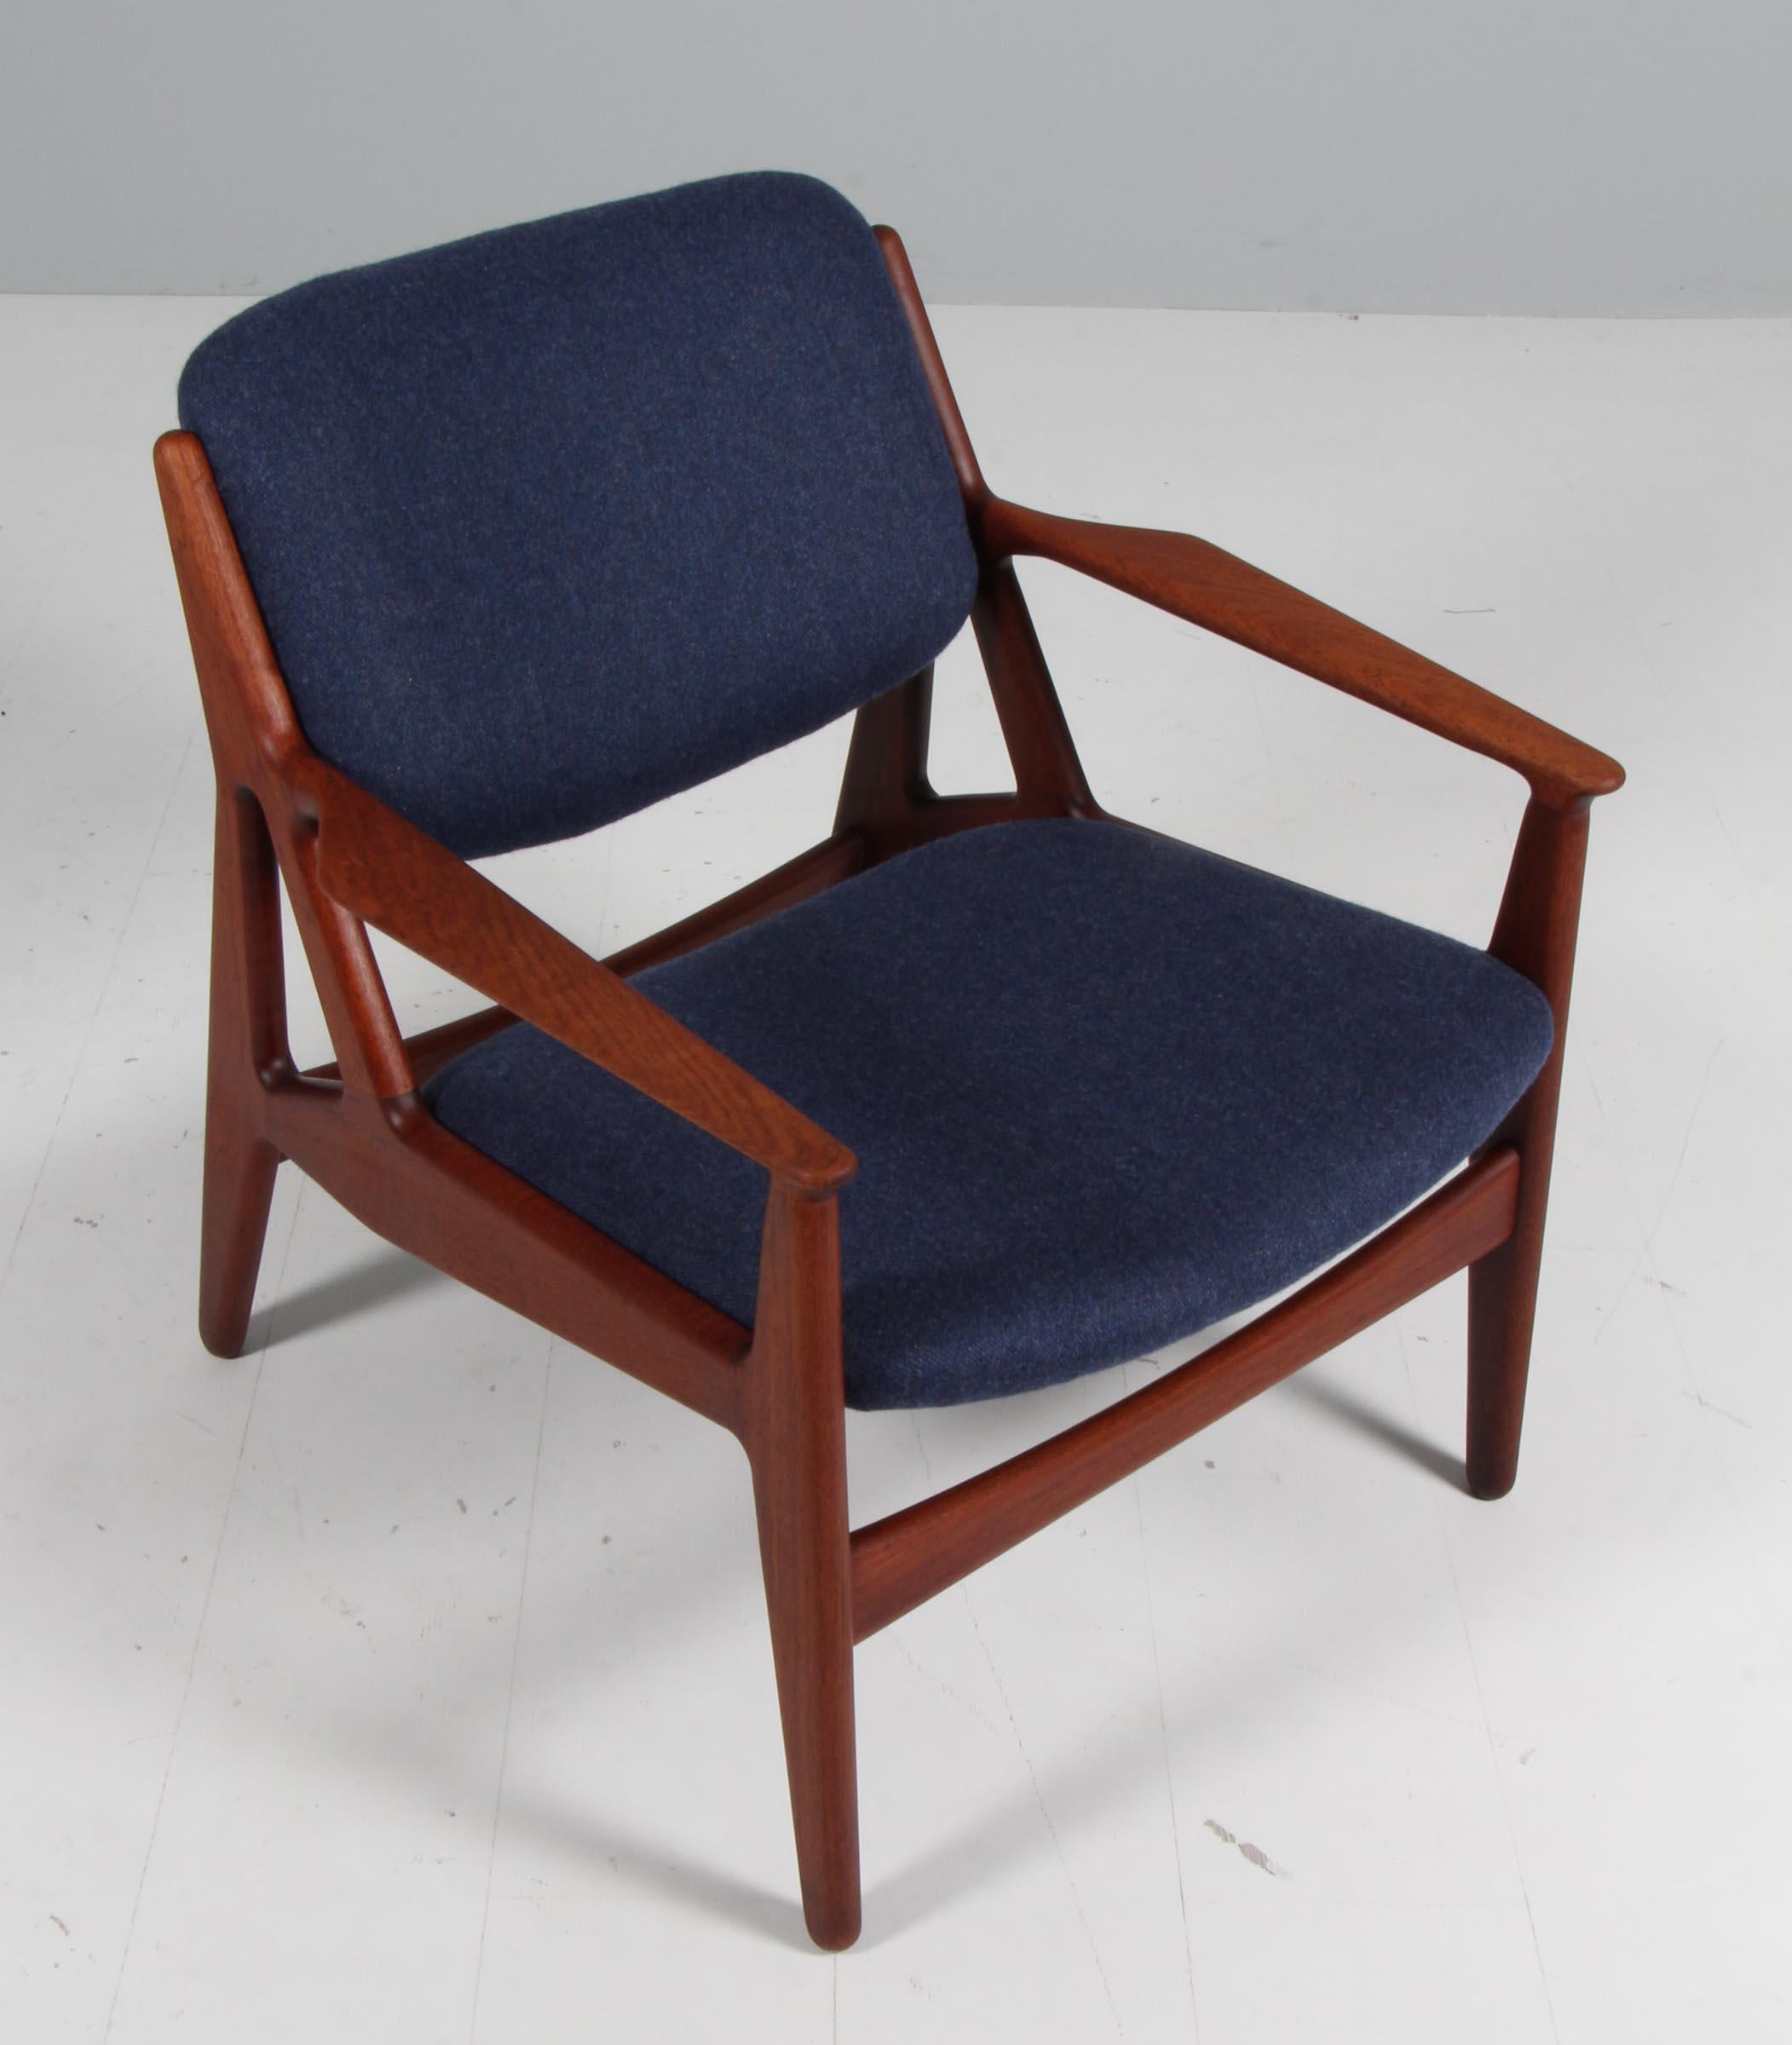 Chaise longue Arne Vodder en teck massif.

Nouveaux coussins rembourrés en laine bleue.

Fabriqué par Vamo.